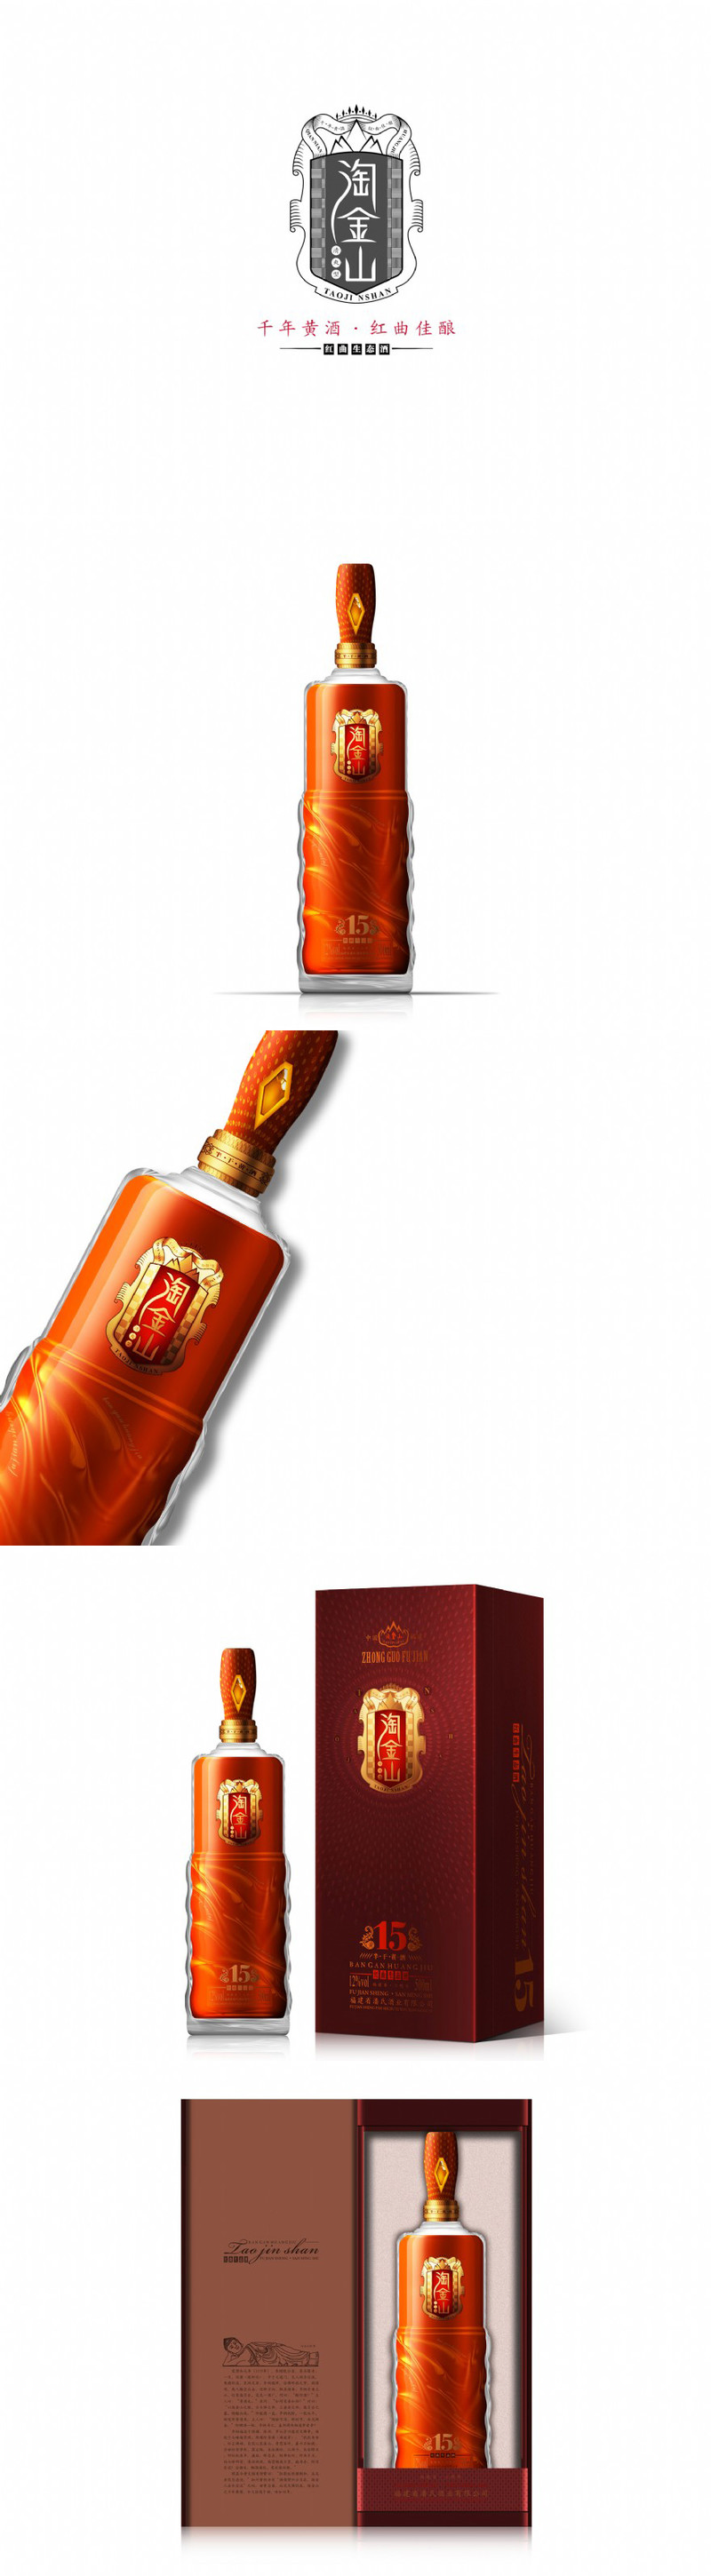 淘金山红粬黄酒包装